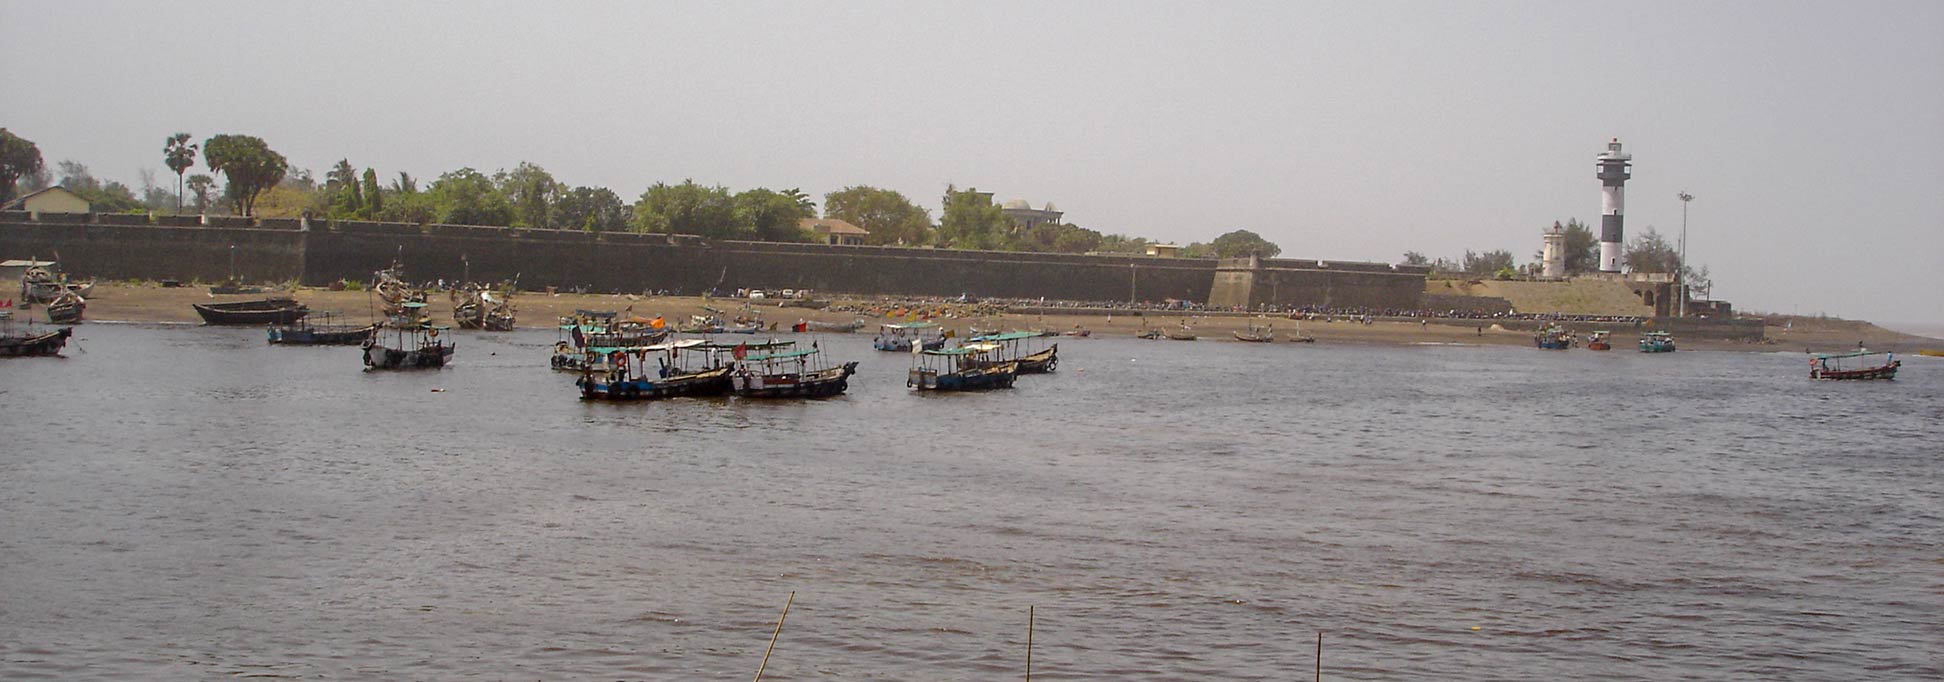 Fortress and Lighthouse of Daman at Daman Ganga River, India